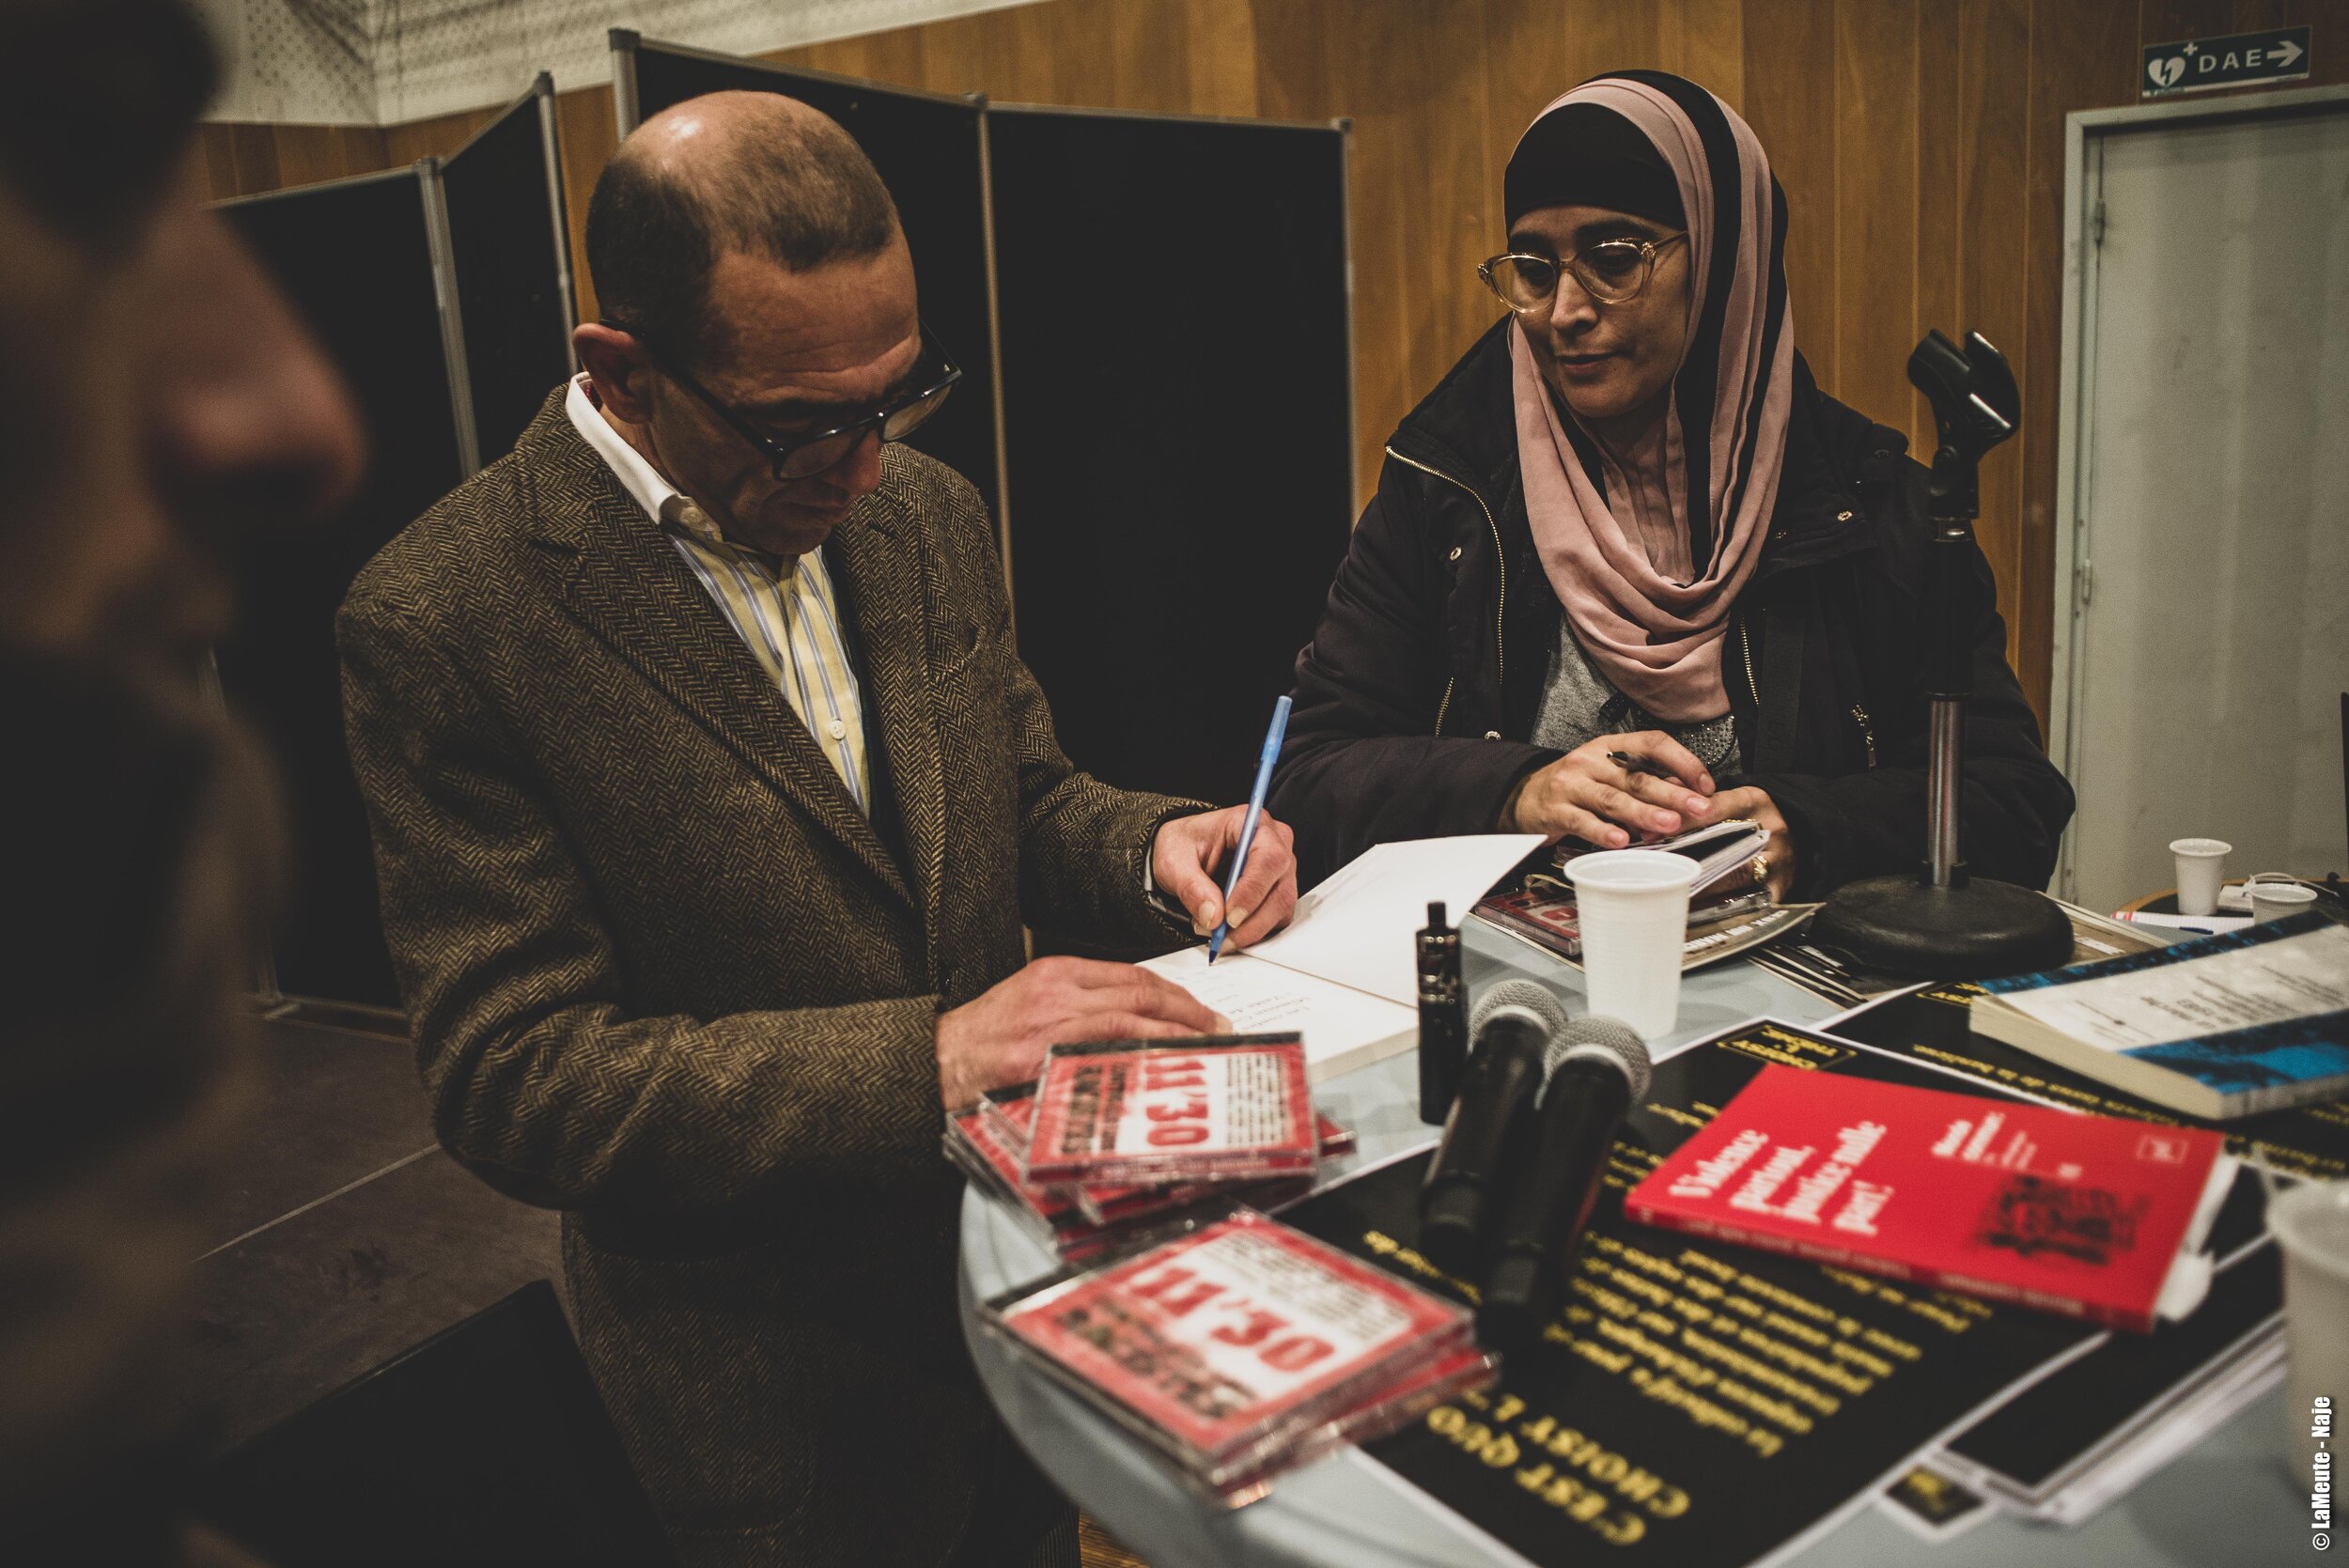  Farid Taalba clôture la soirée en signant quelques livres auxquels il a collaboré, et en continuant de répondre aux questions du public. 